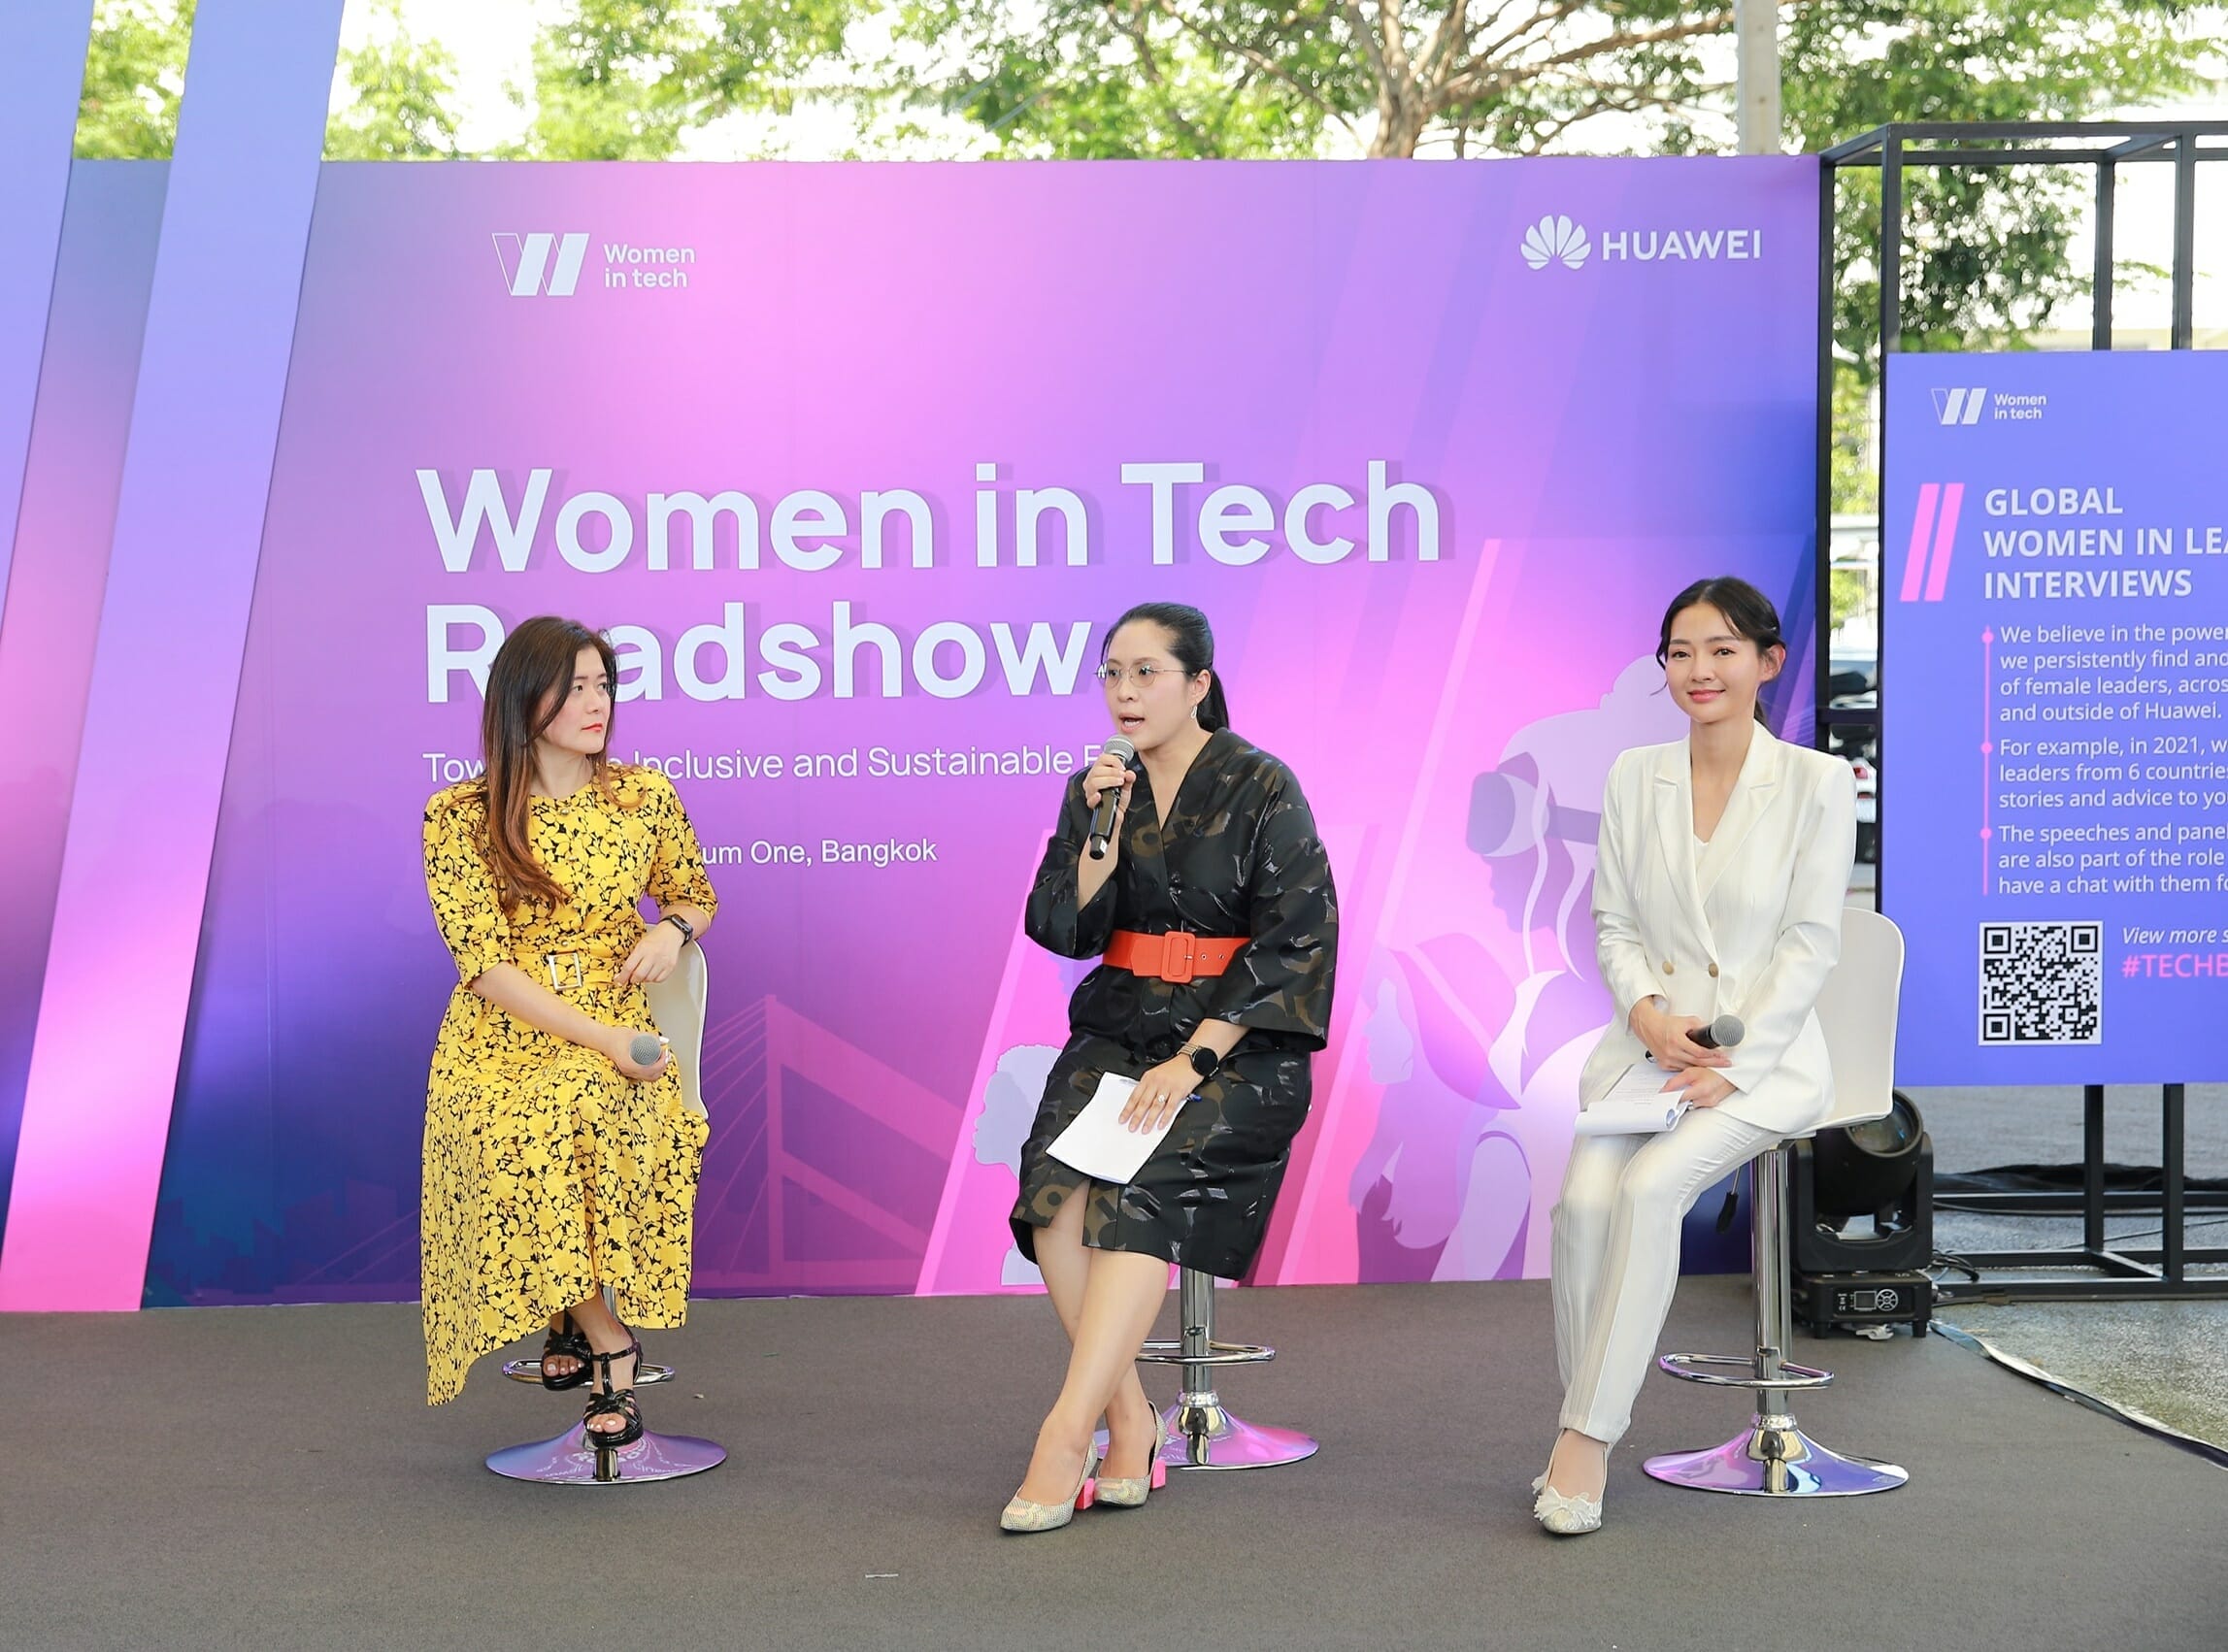 HUAWEI จัดงานโร้ดโชว์ “Women in Tech” ครั้งแรกในประเทศไทย เดินหน้าเสริมศักยภาพผู้หญิงไทยในวงการไอที